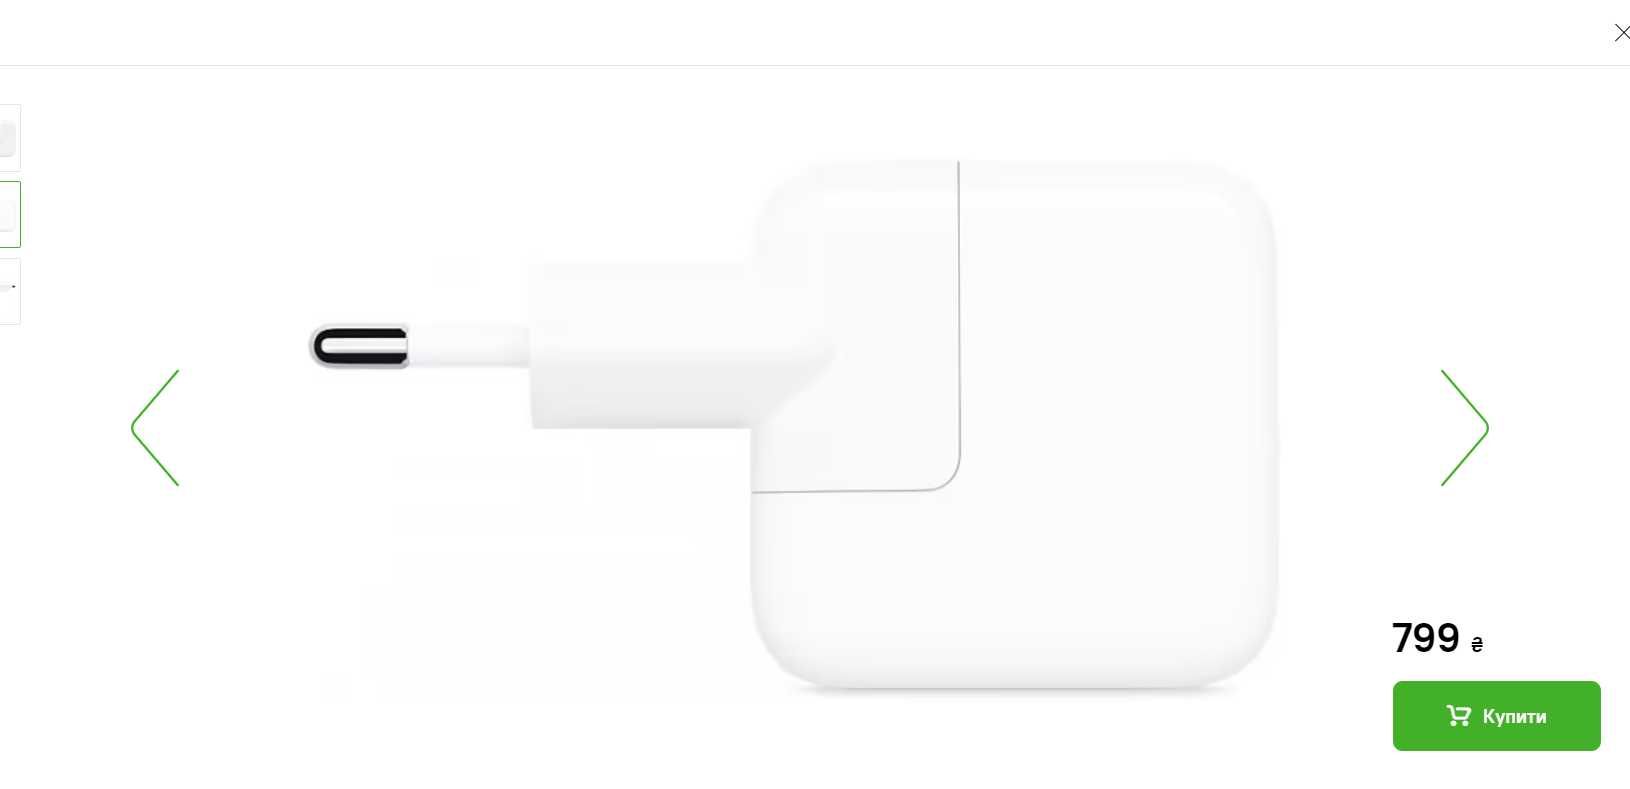 Мережевий зарядний пристрій Apple iPad UPower Adapter USB ОРИГІНАЛ 12W